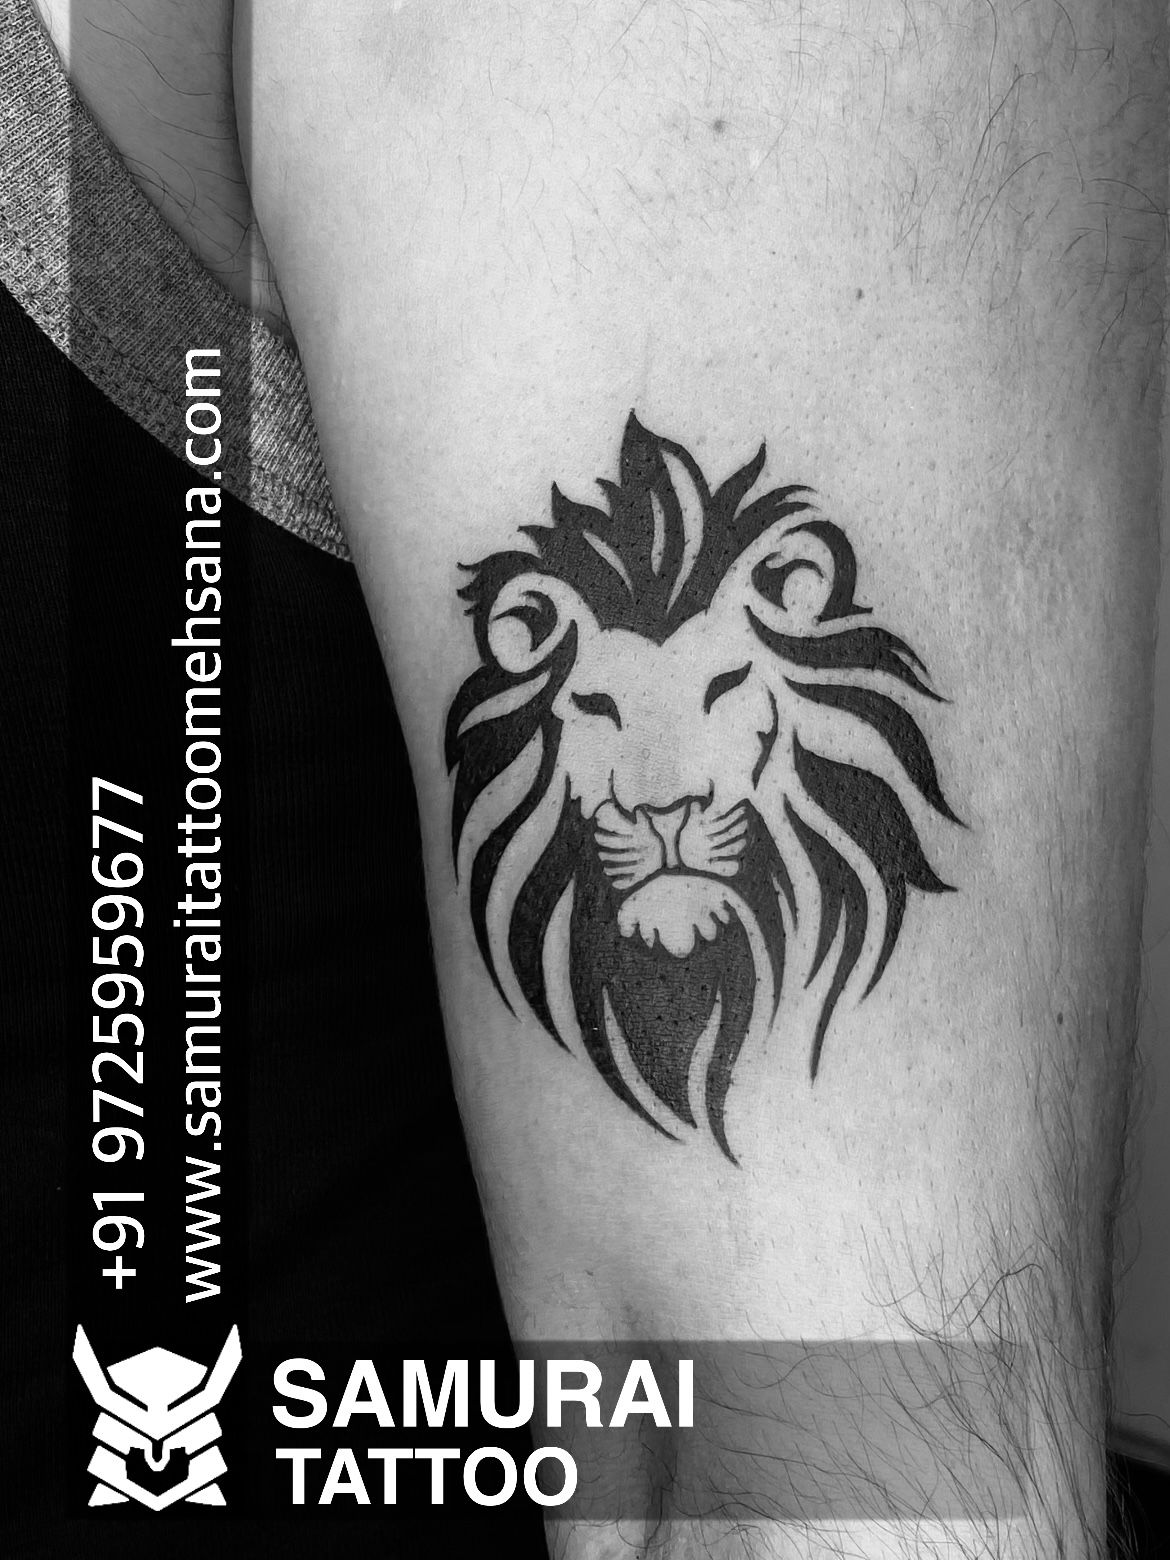 Tattoo uploaded by Vipul Chaudhary • lion tattoo |Lion tattoo ...